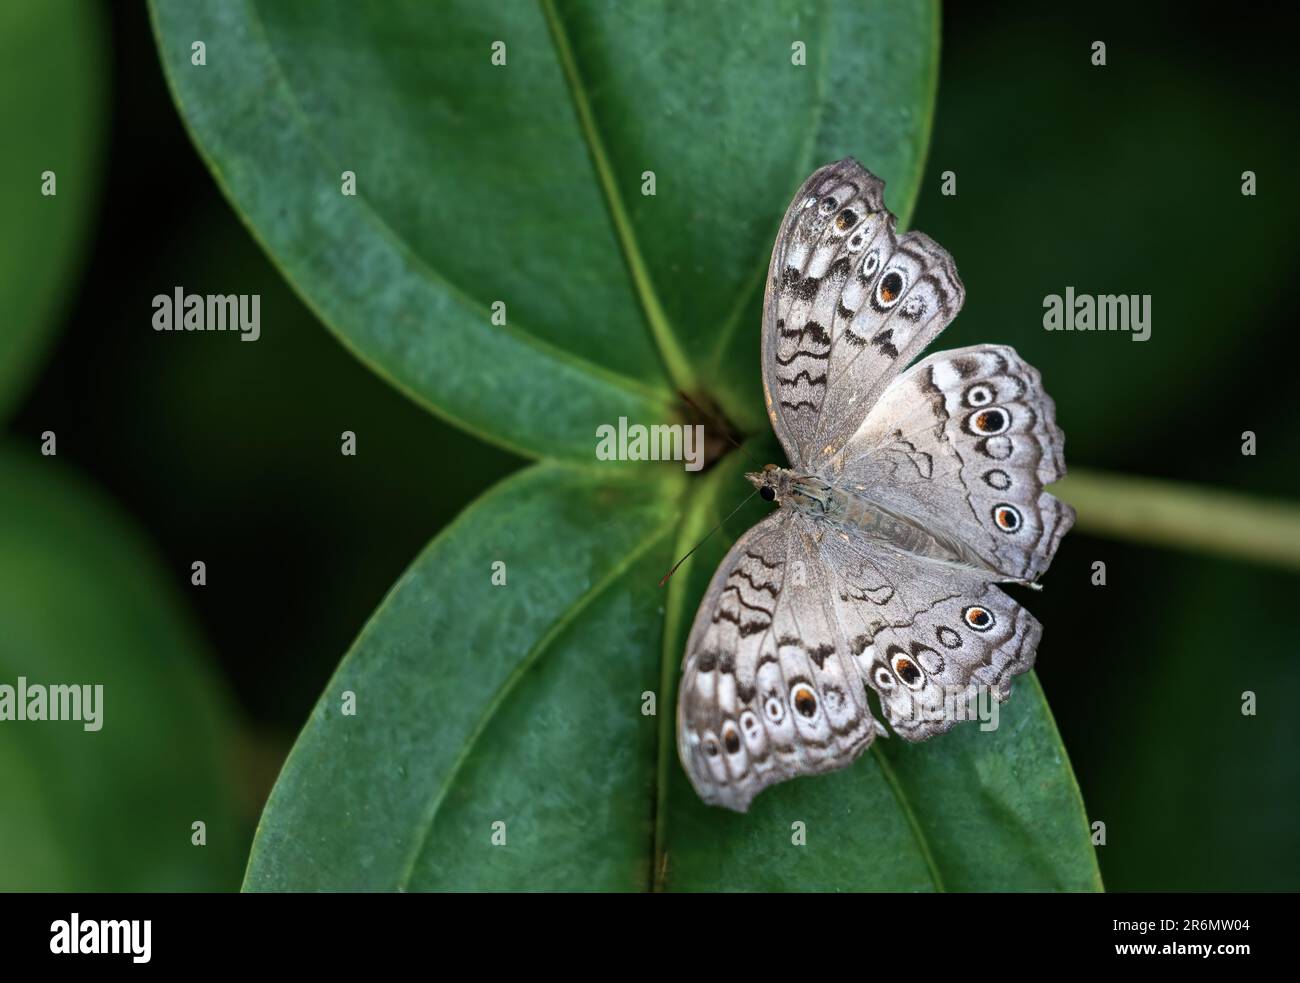 Le papillon gris (Junonia atlites) repose sur une plante verte avec des ailes ouvertes. Horizontalement. Banque D'Images